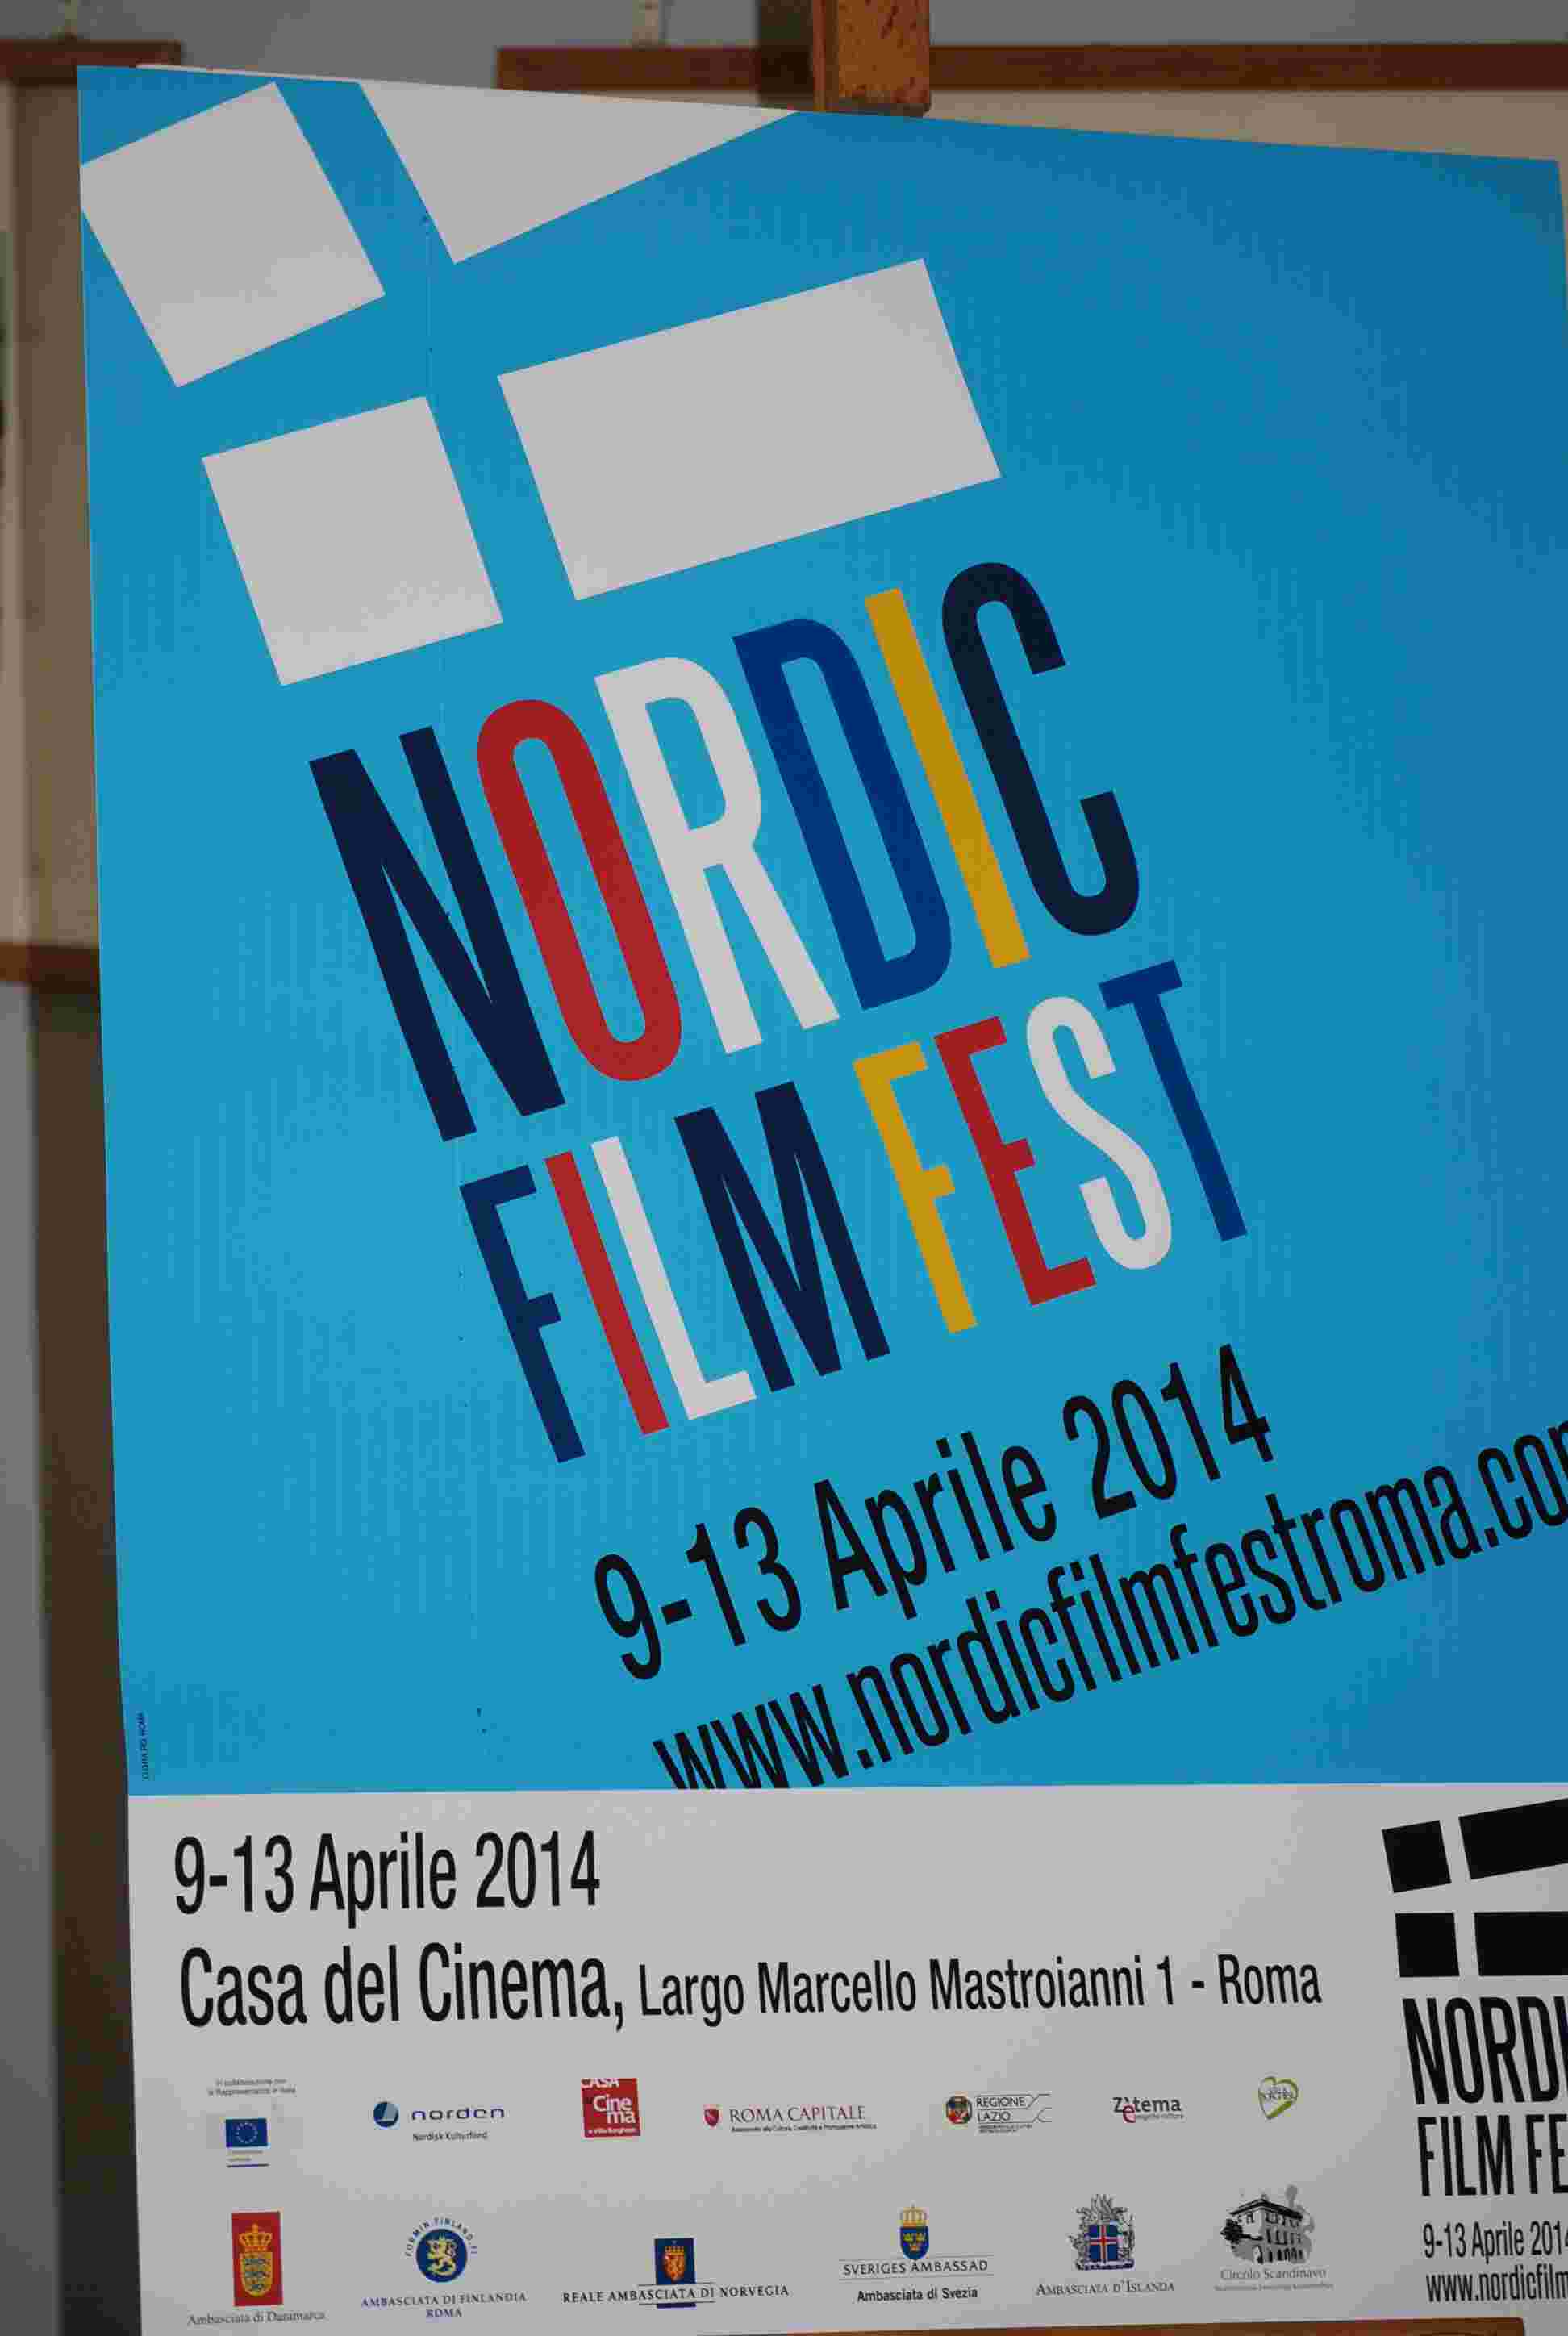 Nordic film fest 2014